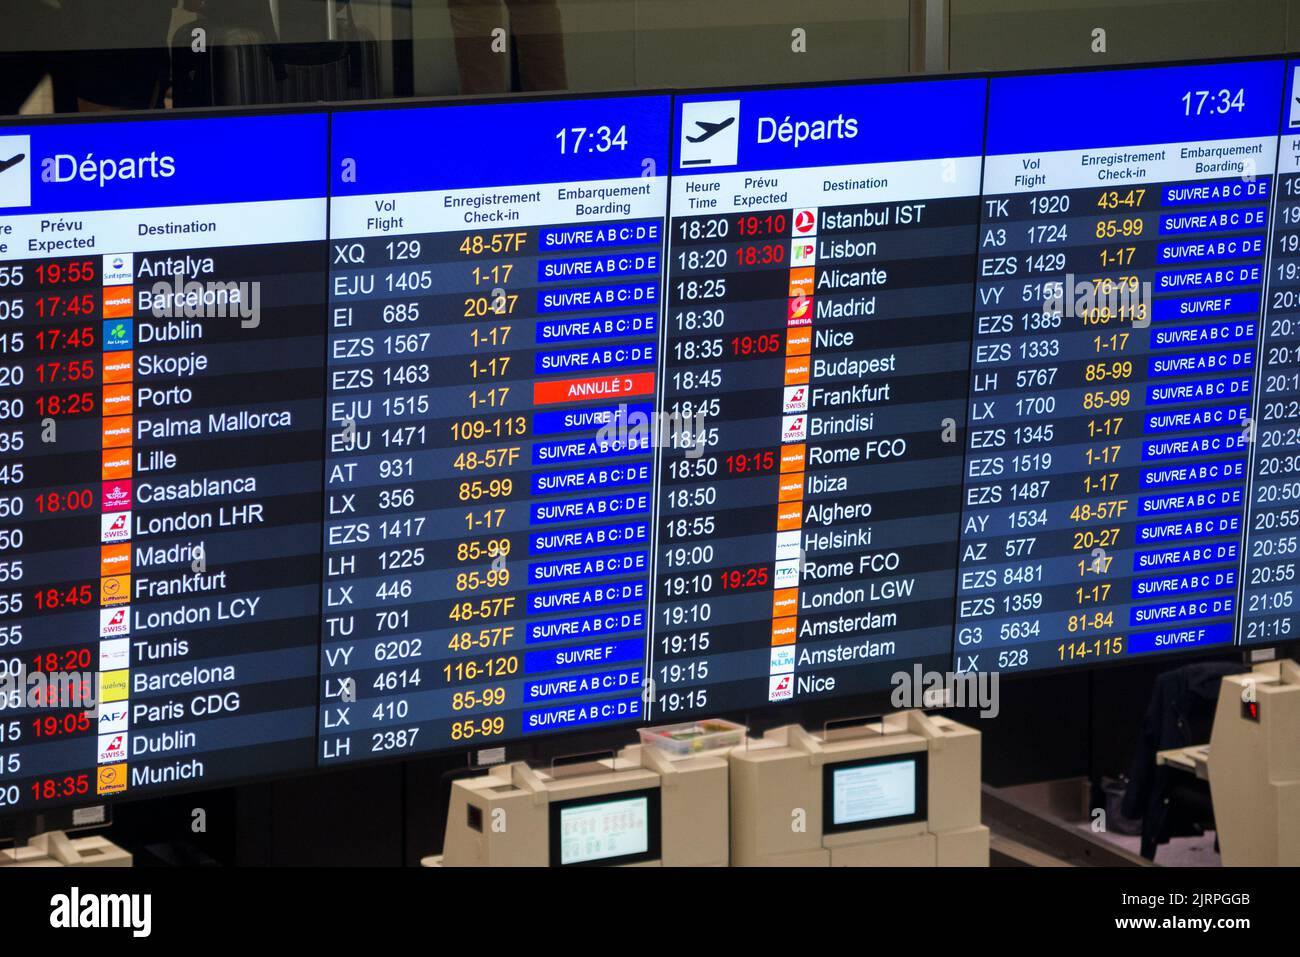 Schermata di visualizzazione delle informazioni sulle partenze (simile a una scheda degli arrivi) che mostra l'orario di partenza e la destinazione del volo, nella sala partenze dell'aeroporto internazionale Cointrin di Ginevra/Ginevra. Svizzera (131) Foto Stock